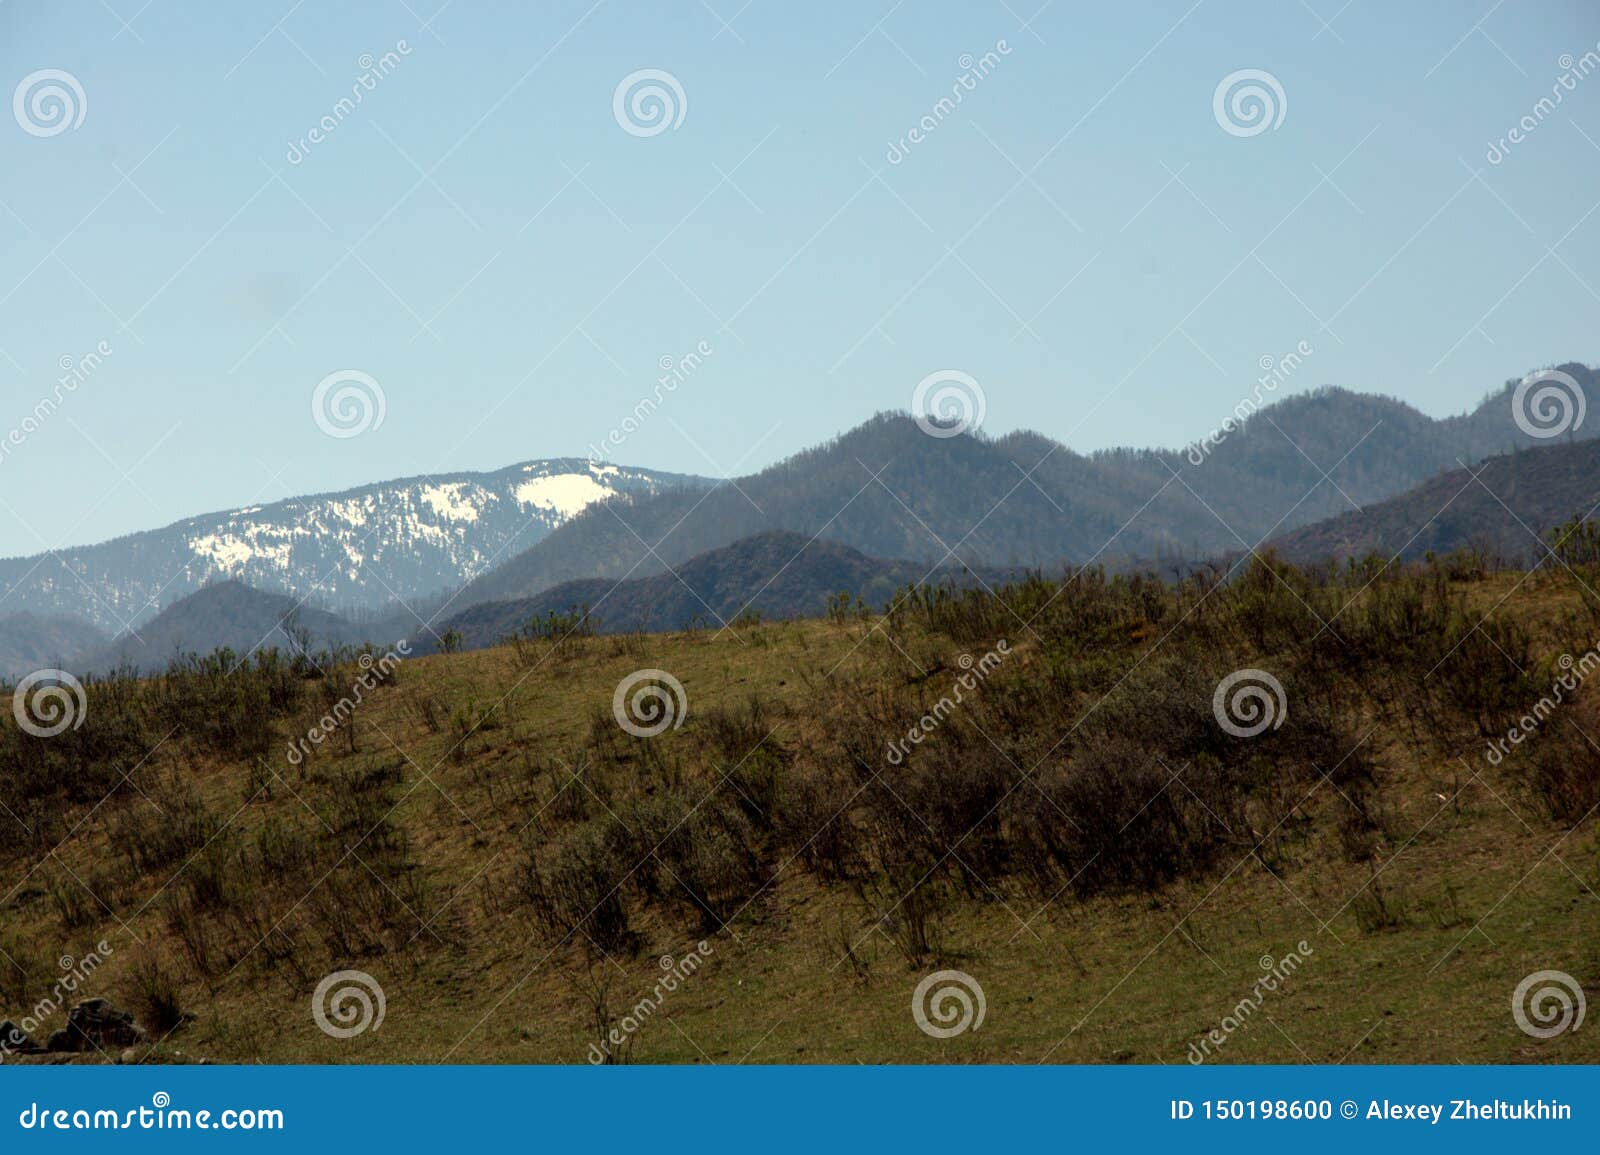 Οι σειρές υψηλών βουνών που εισβάλλονται με το κωνοφόρο δάσος κάτω από το μπλε ουρανό και τον άσπρο σωρείτη καλύπτουν Η Δημοκρατία Gorny Altai